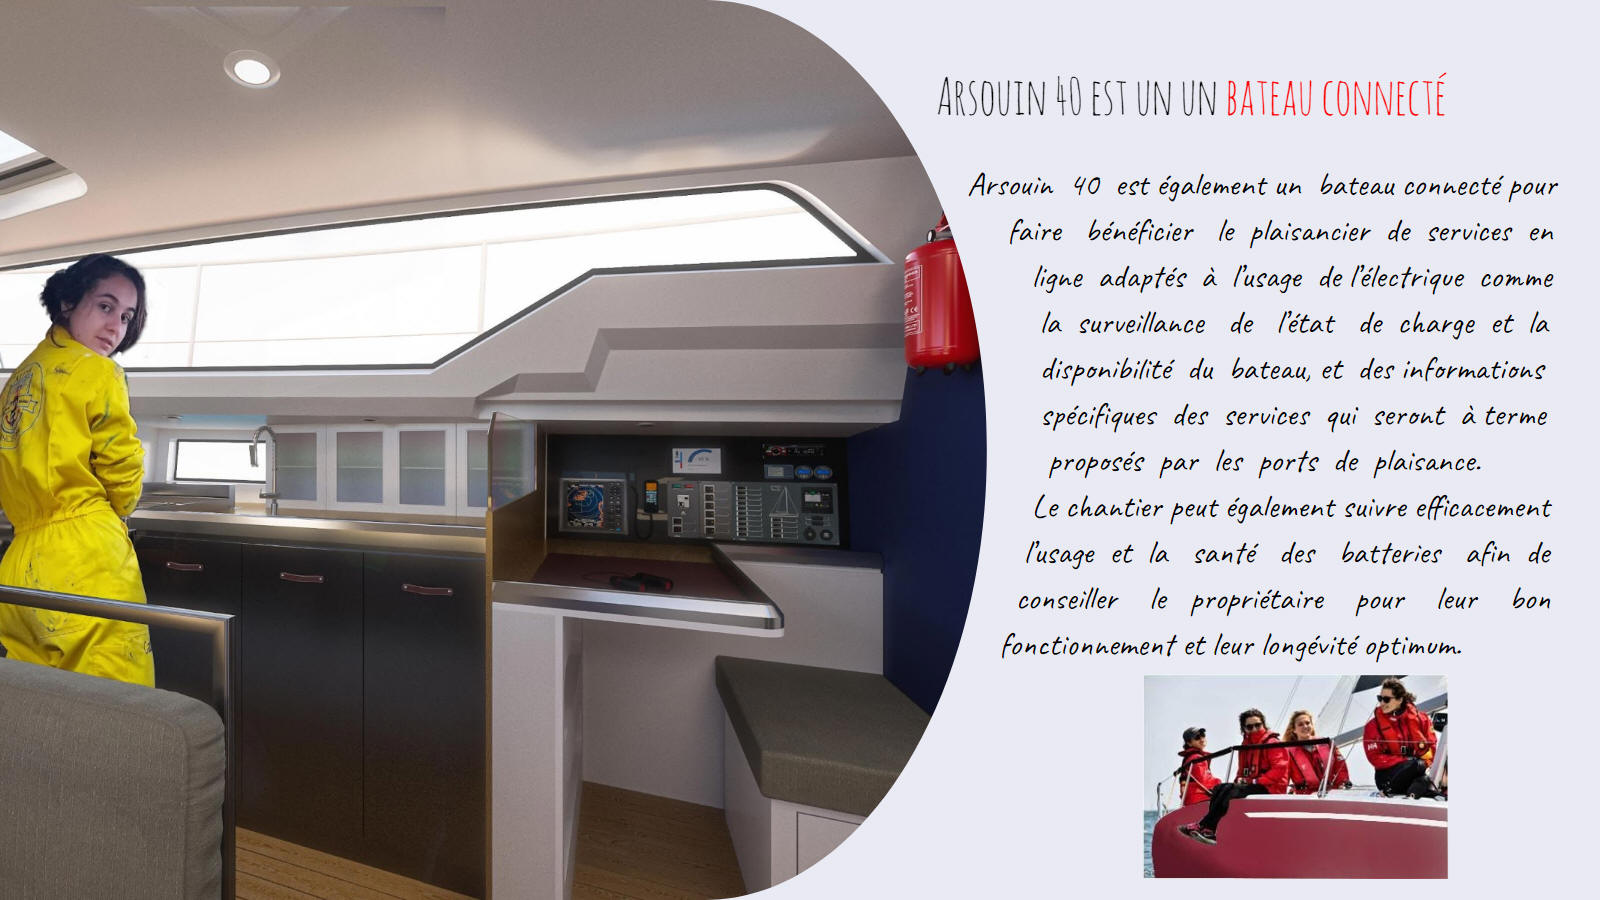 Voilier de voyage, Respecter la mer avec l'énergie hybride. Arsouin 40 est également un bateau connecté pour faire bénéficier le plaisancier de services en ligne adaptés à l’usage de l’électrique comme la surveillance de l’état de charge et la disponibilité du bateau.